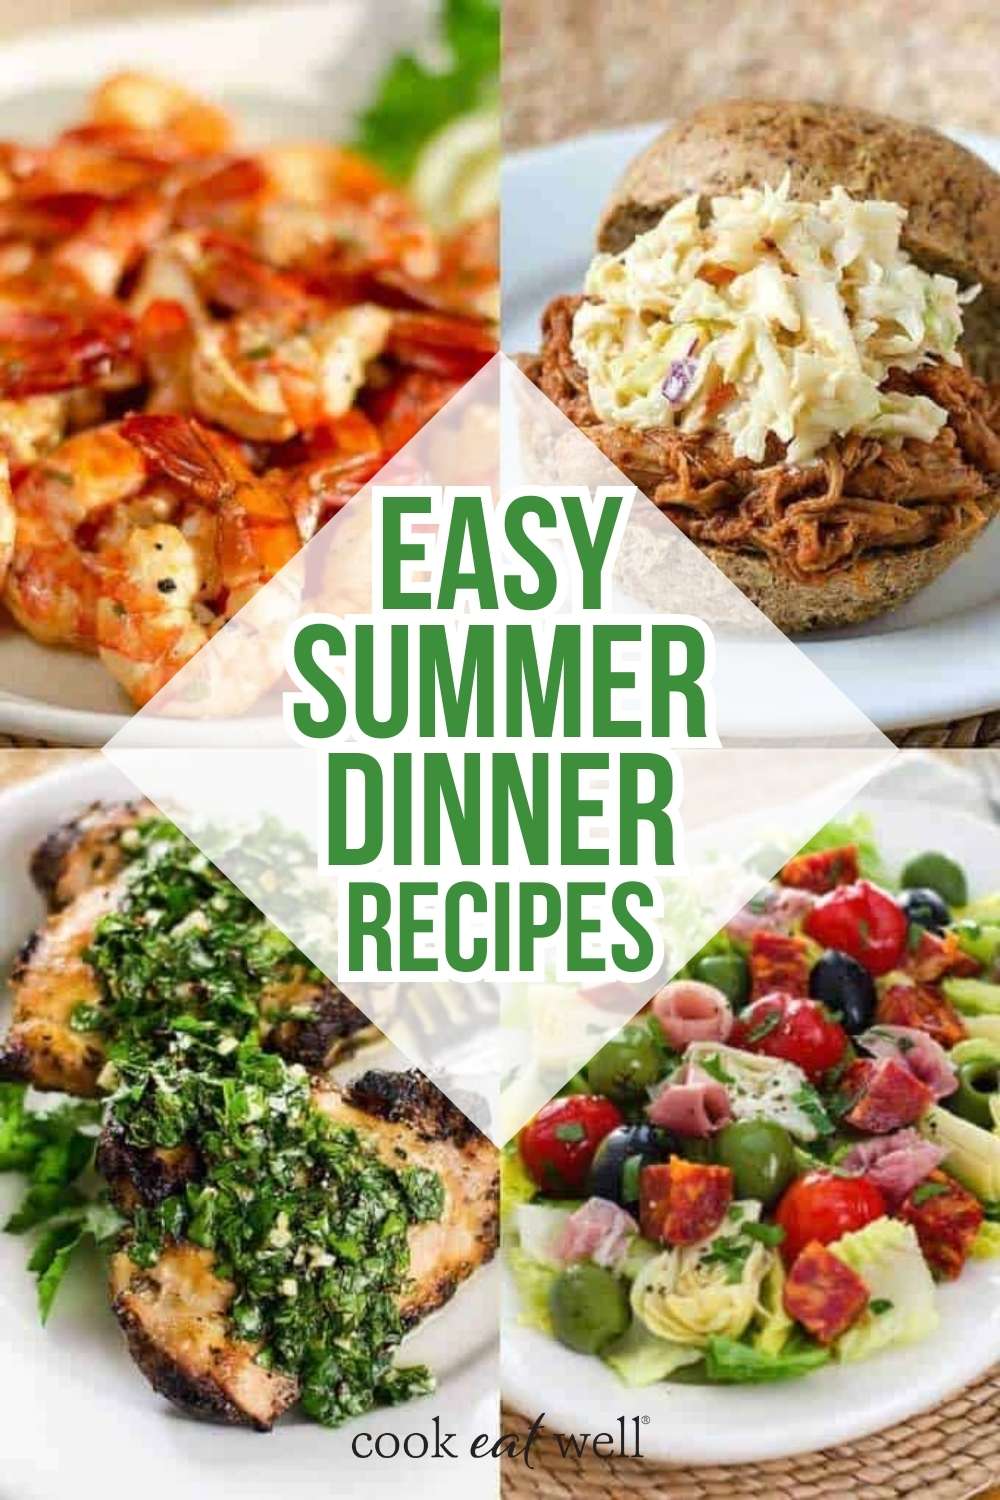 Easy summer dinner recipes